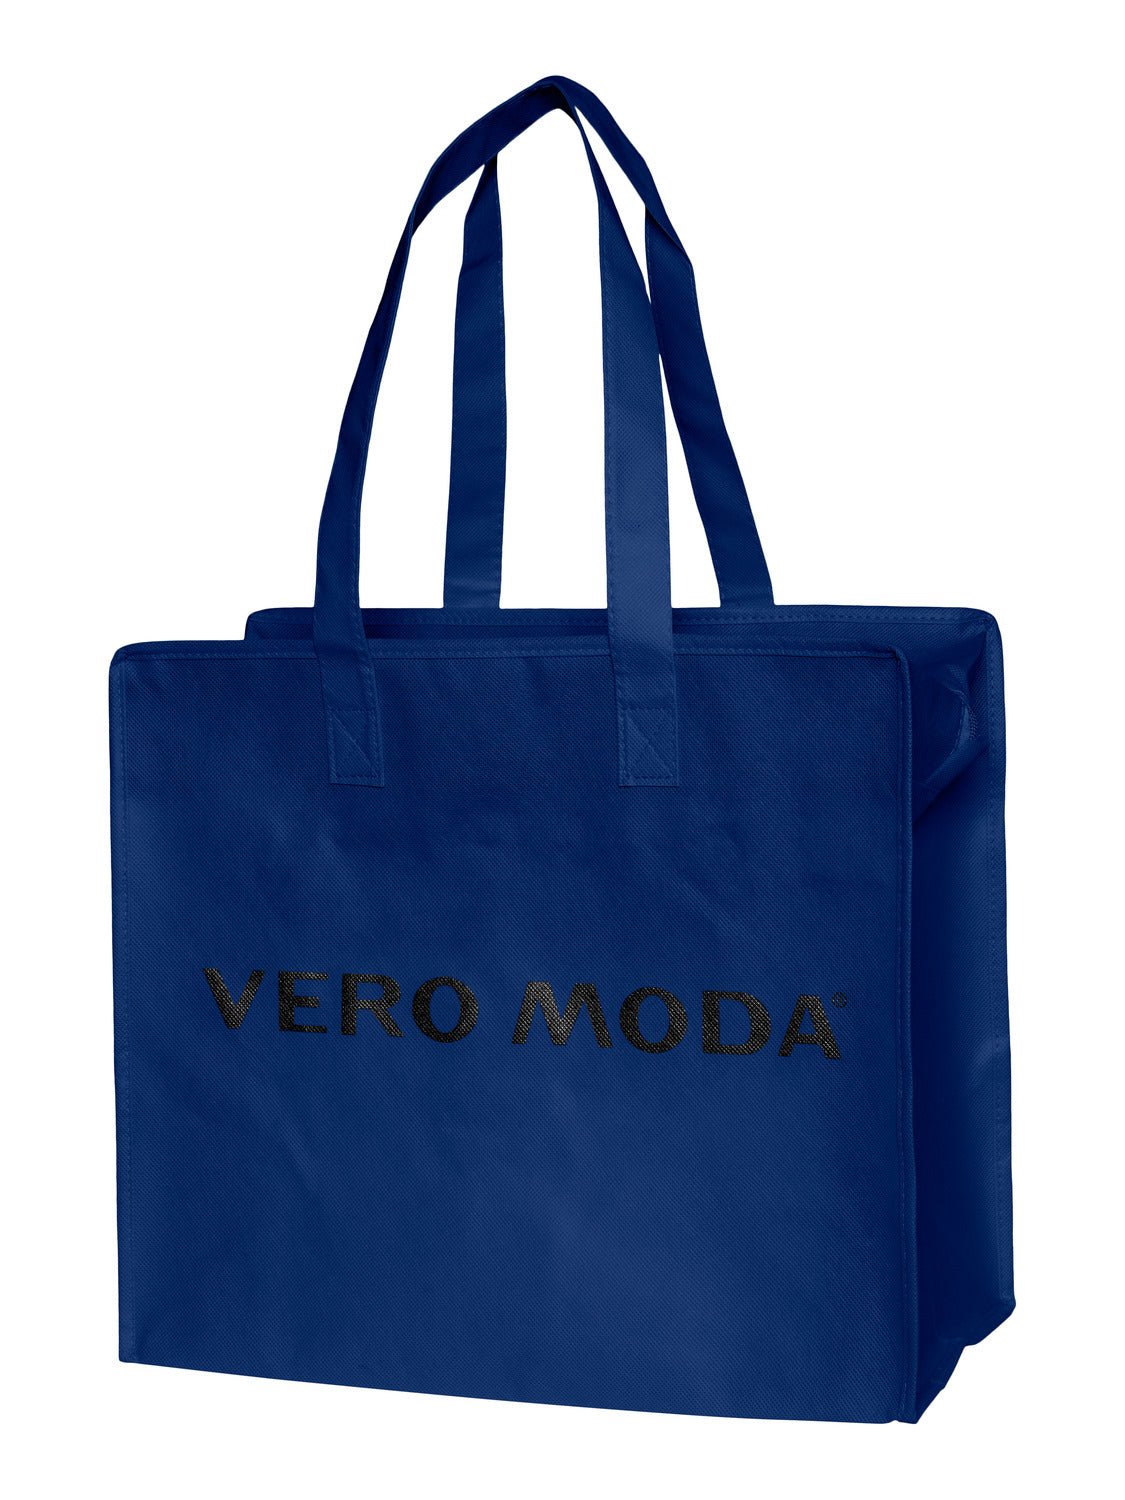 VMSHOPPING Shopping Bag - Sodalite Blue